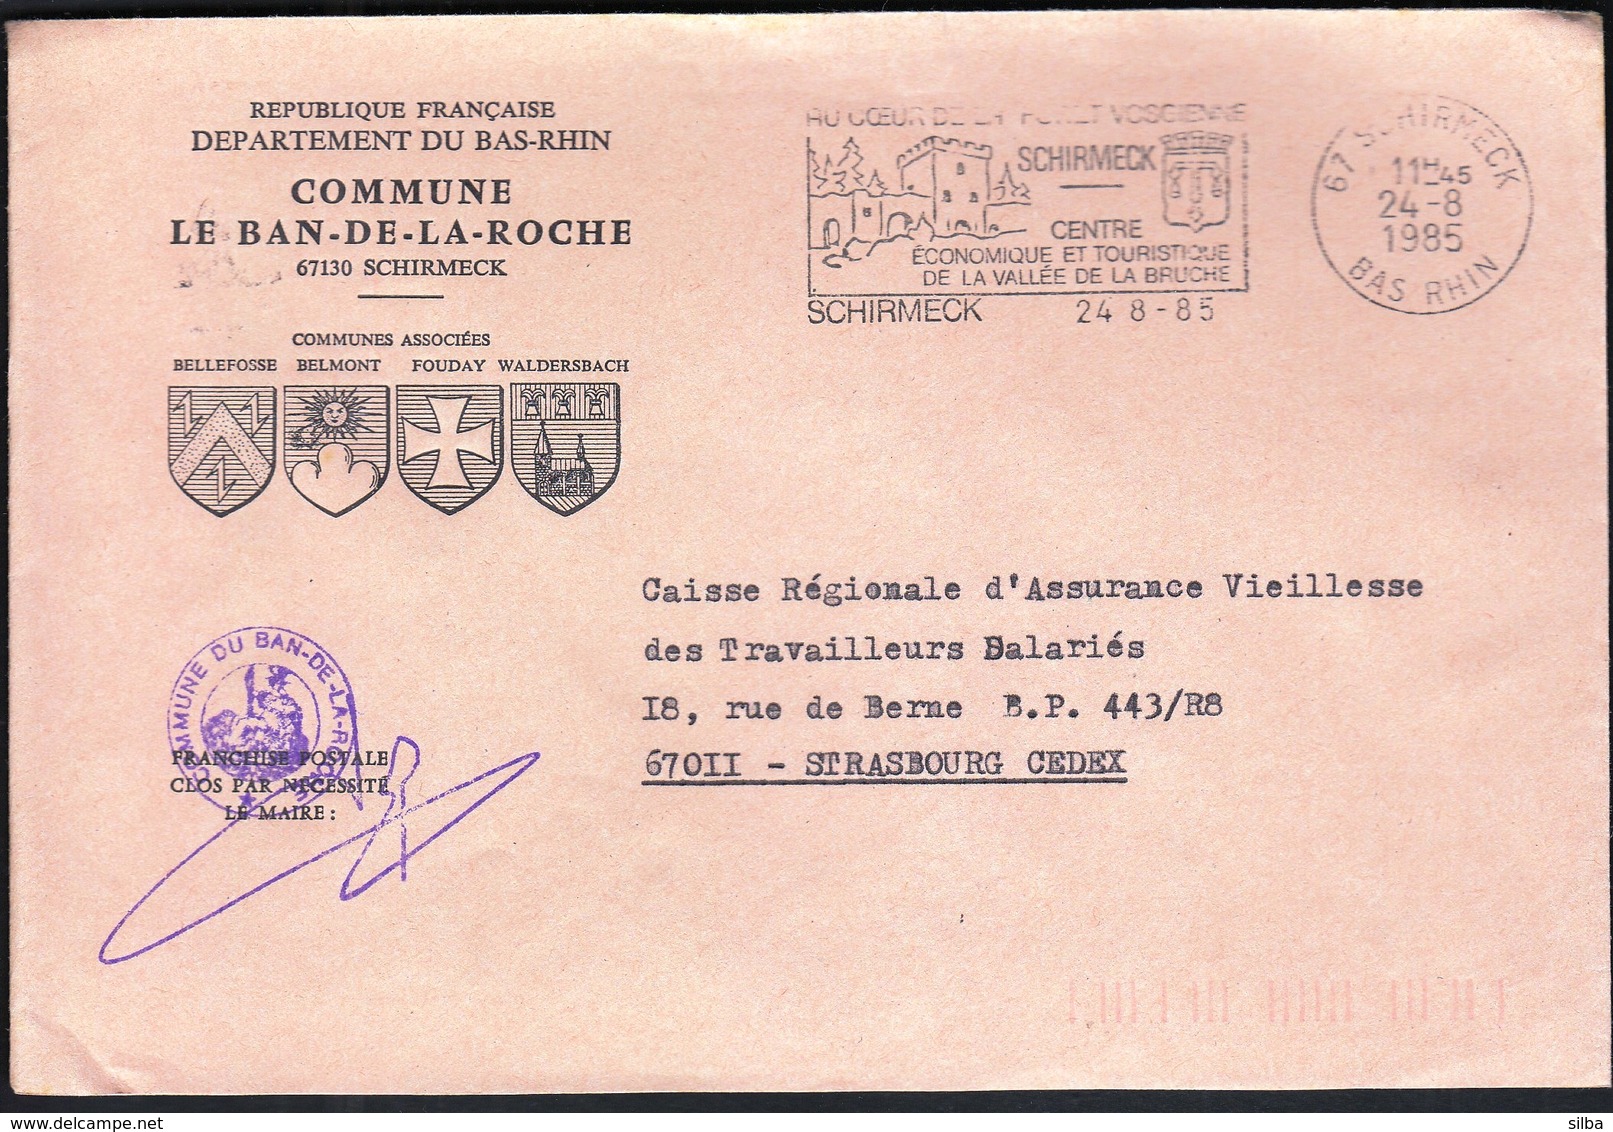 France Schirmeck 1985 / Commune De Le Ban De La Roche / Coat Of Arms / Tourism, Castle / Machine Stamp - 1961-....